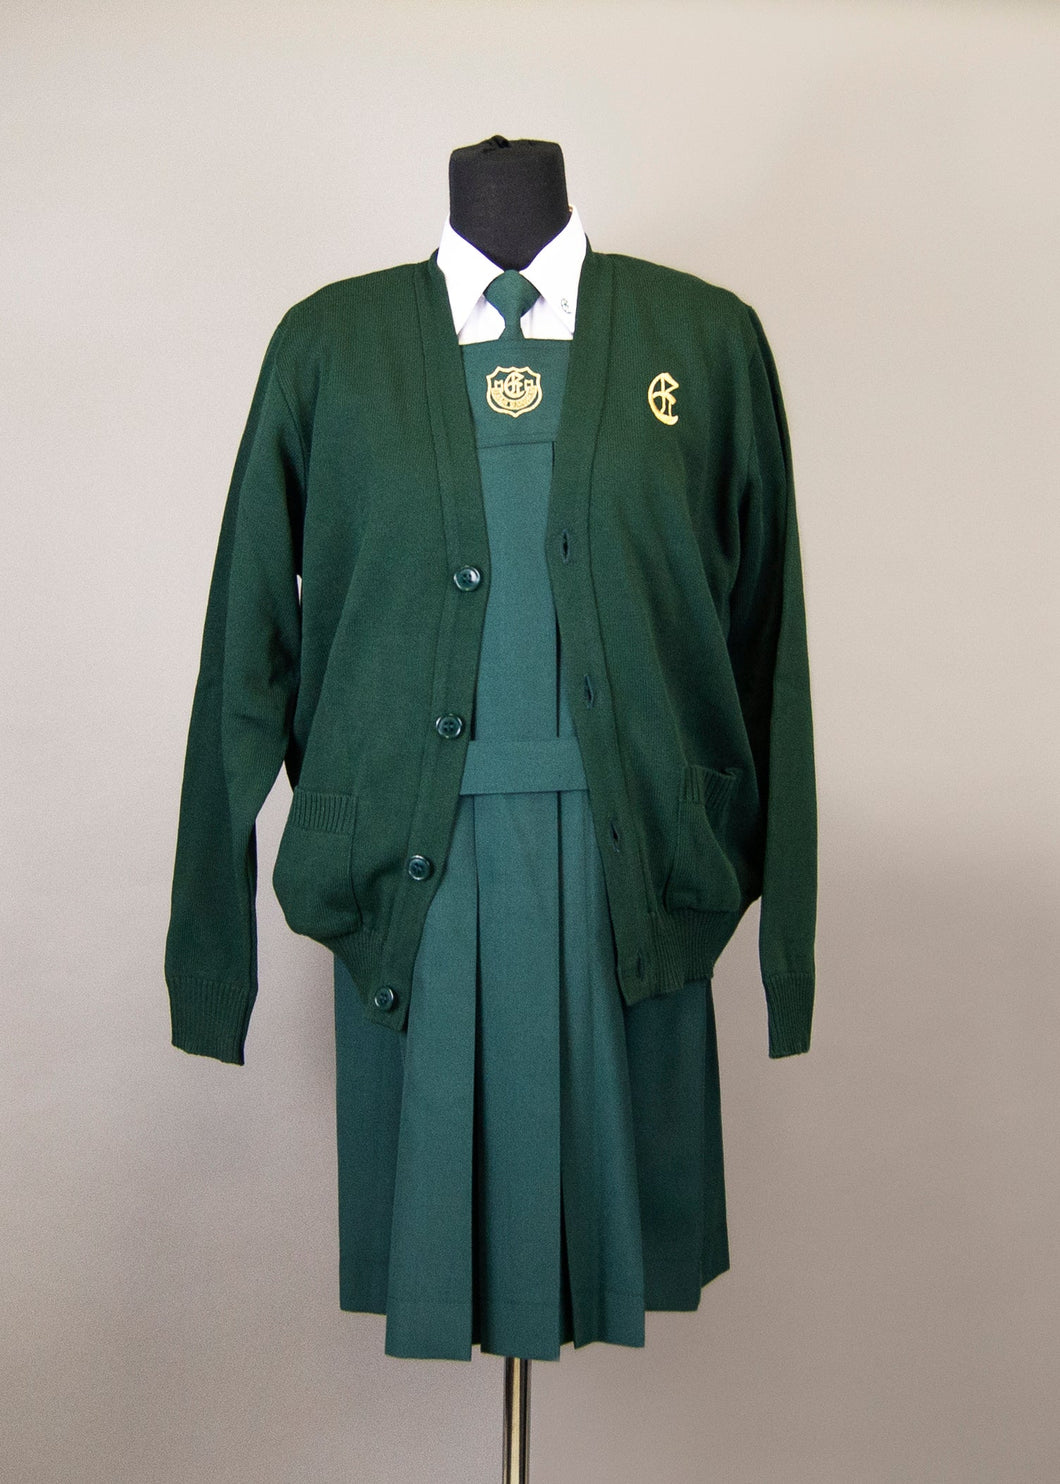 Junior School Cardigan - Adult Sizes